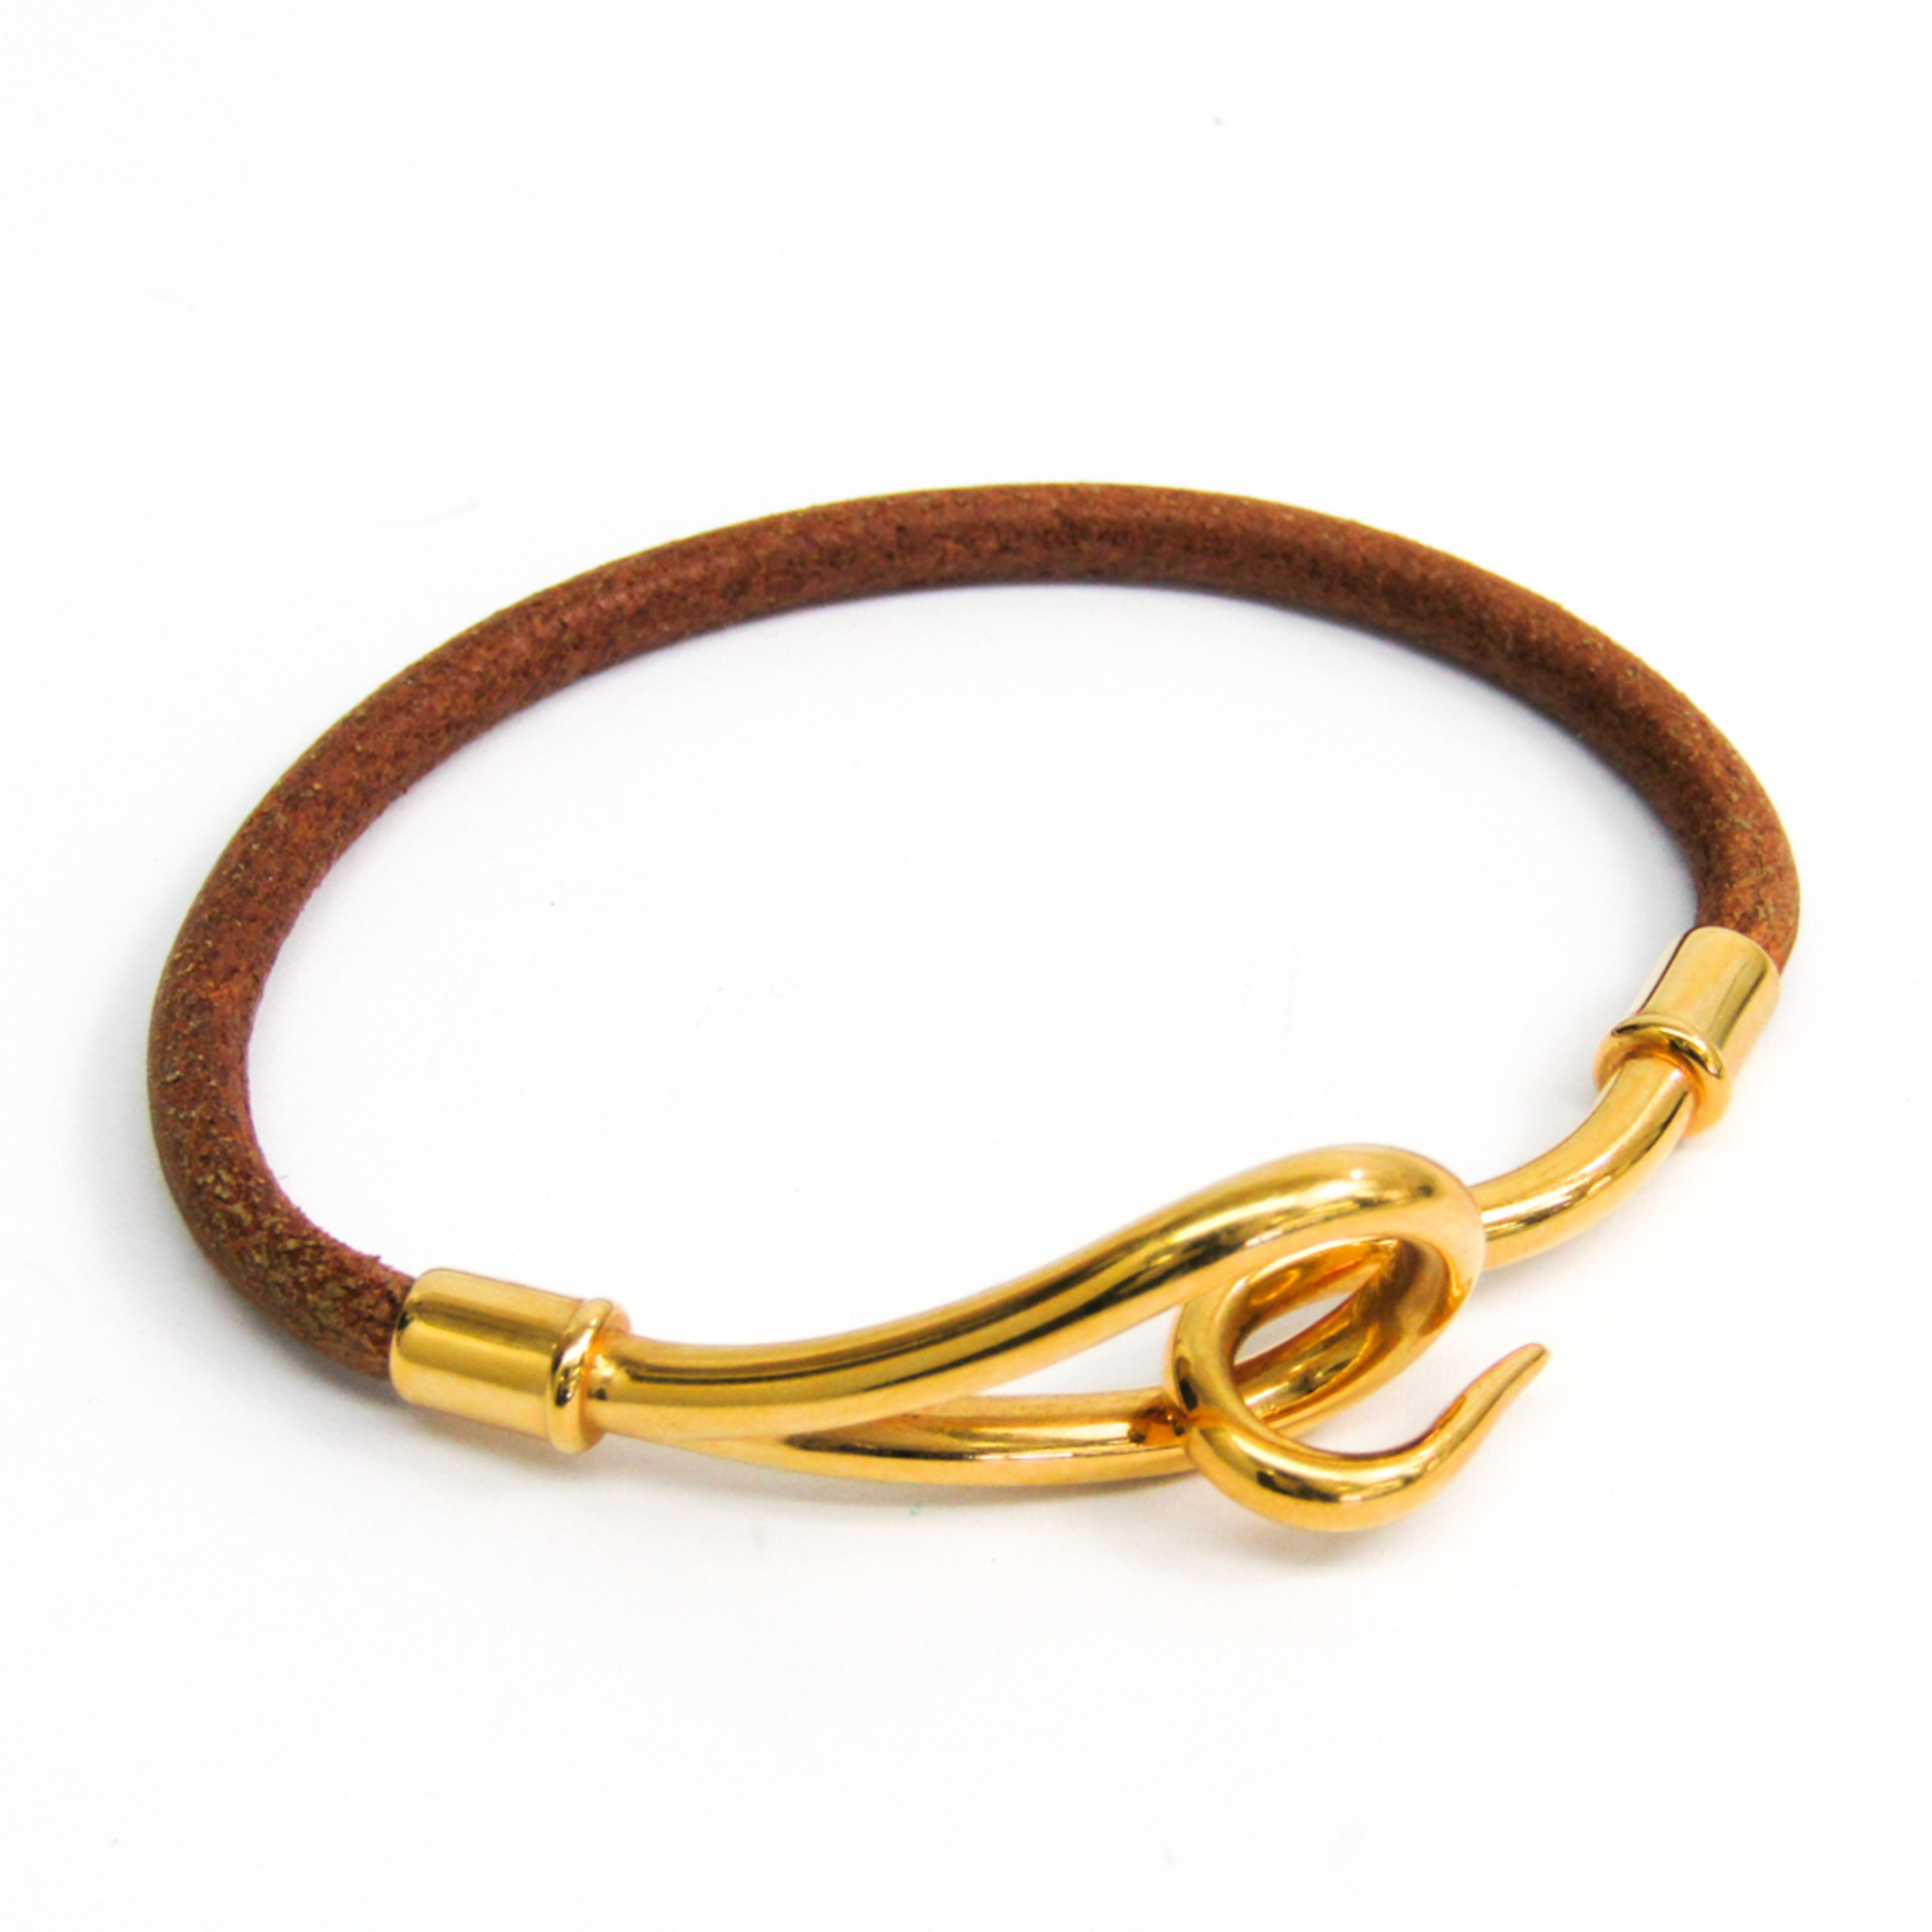 Hermes Jumbo Bracelet Brown,Gold